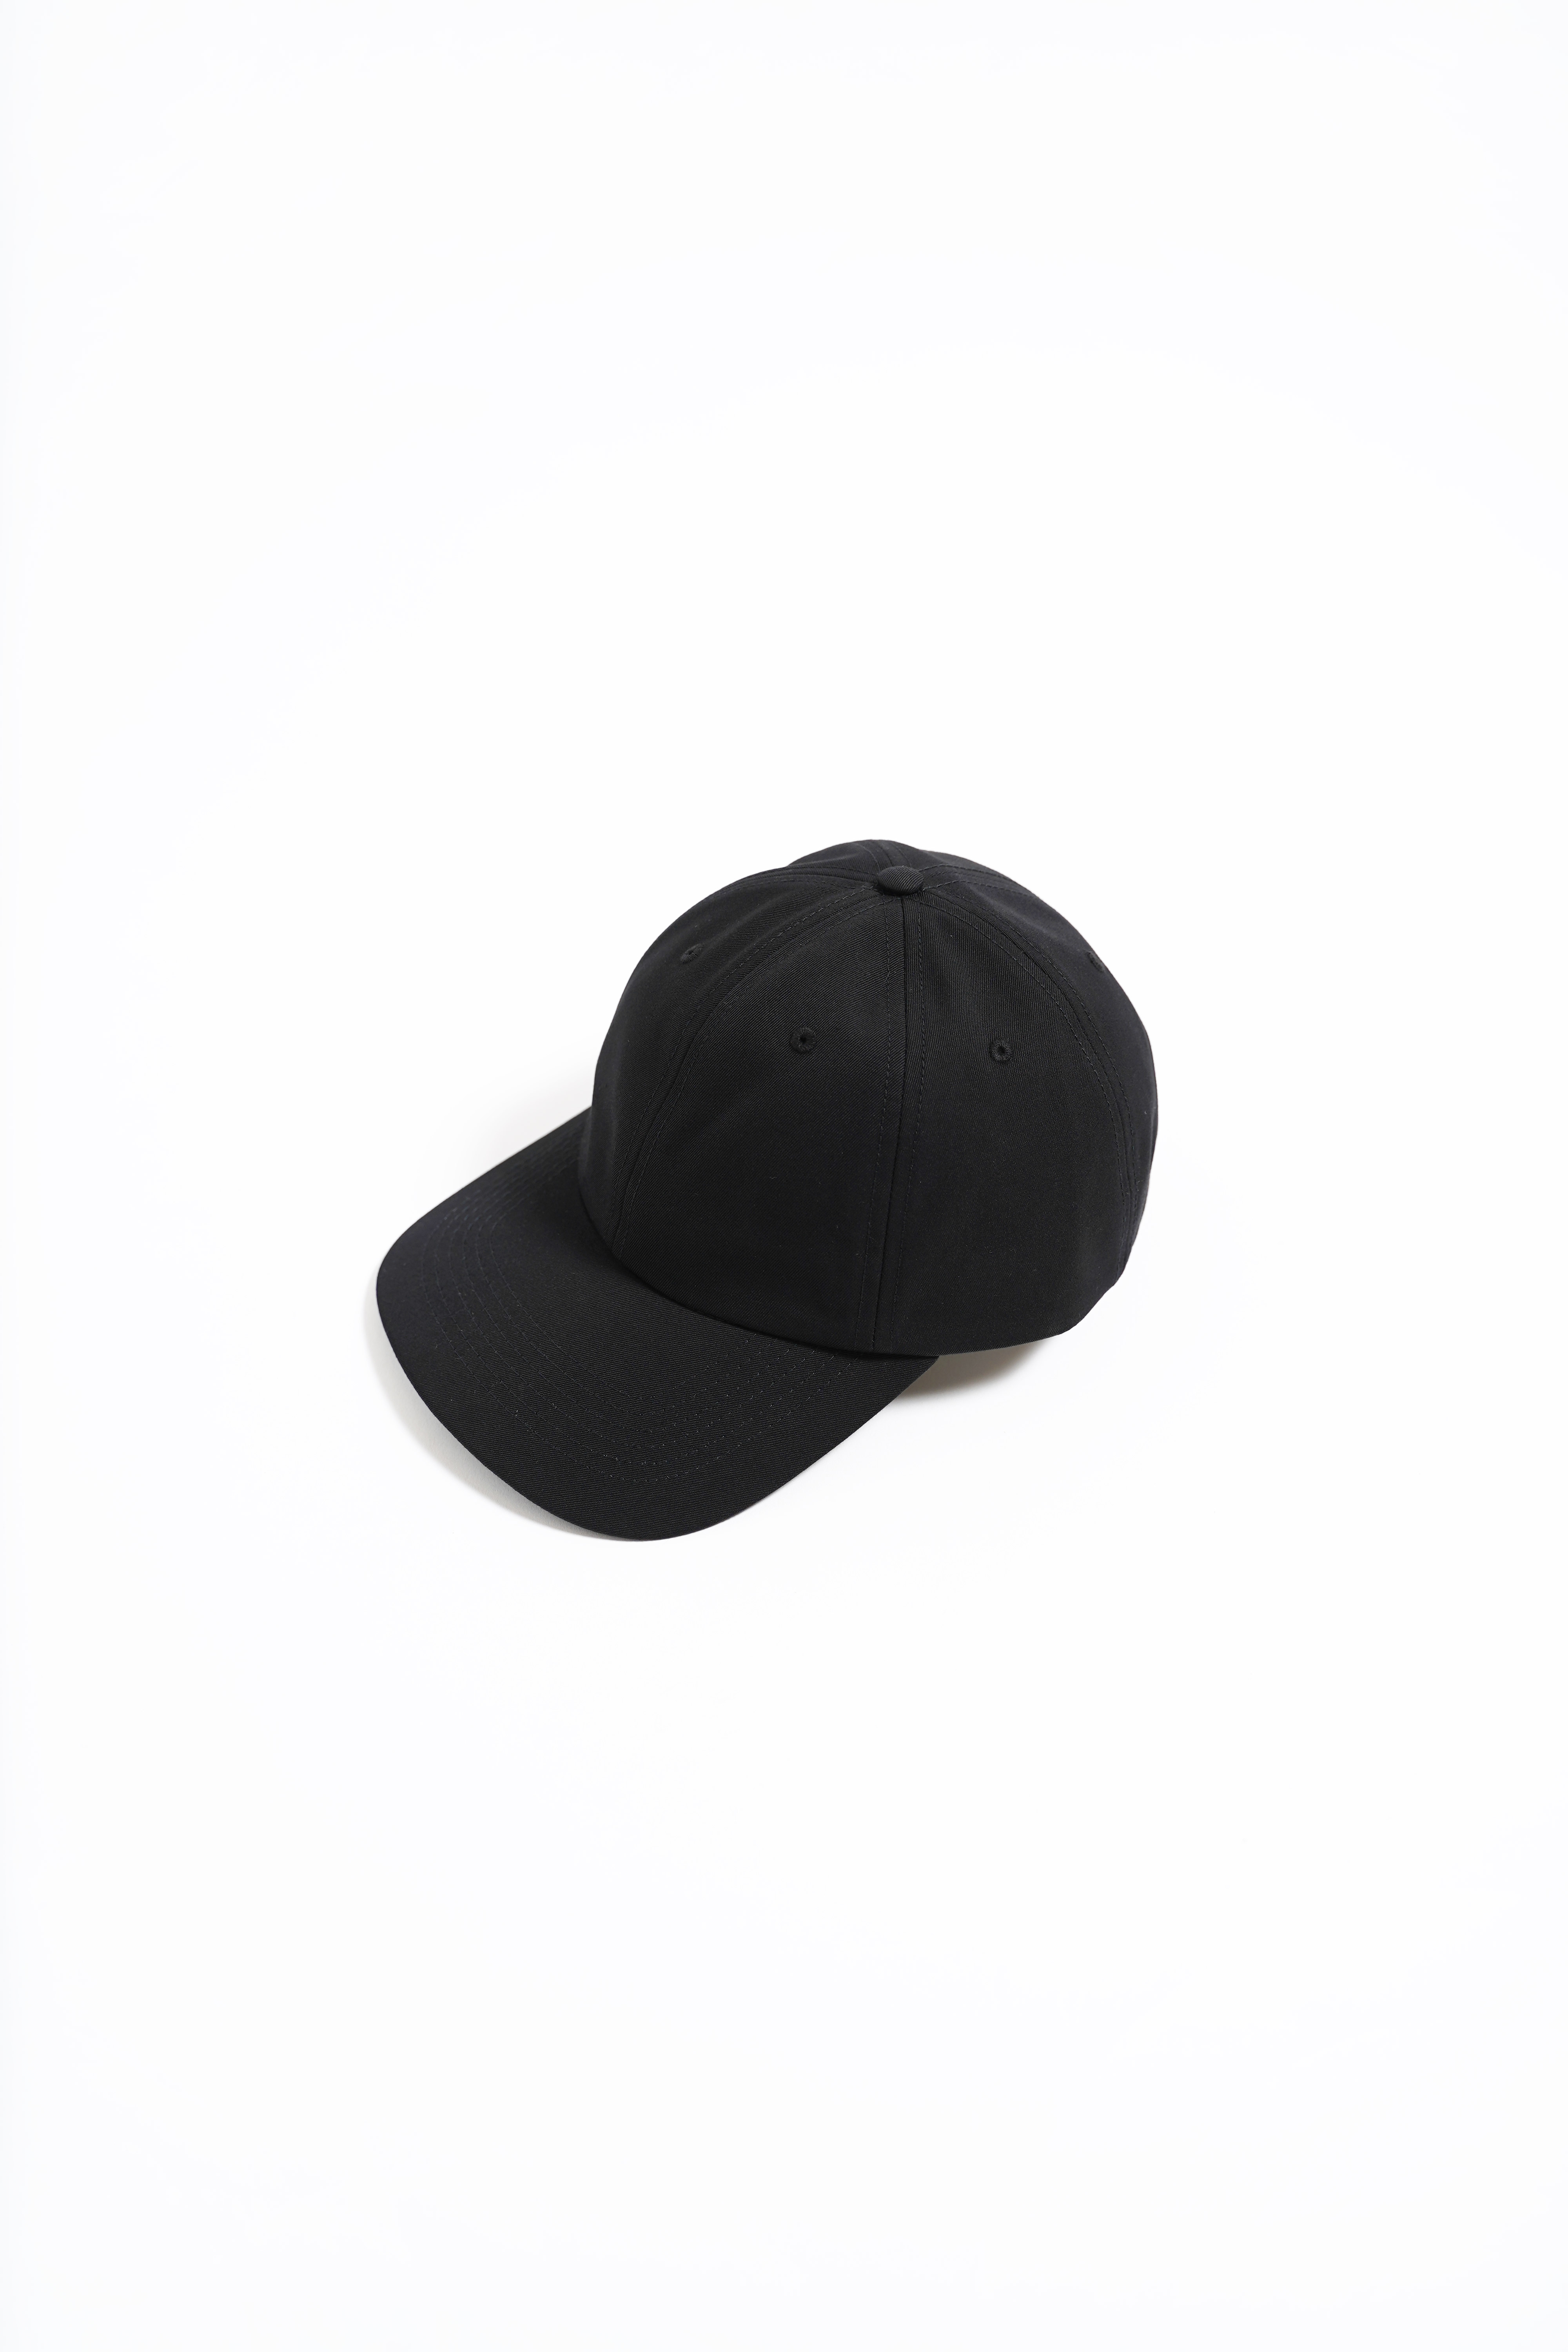 “LOWNN” BACK SIGNATURE CAP